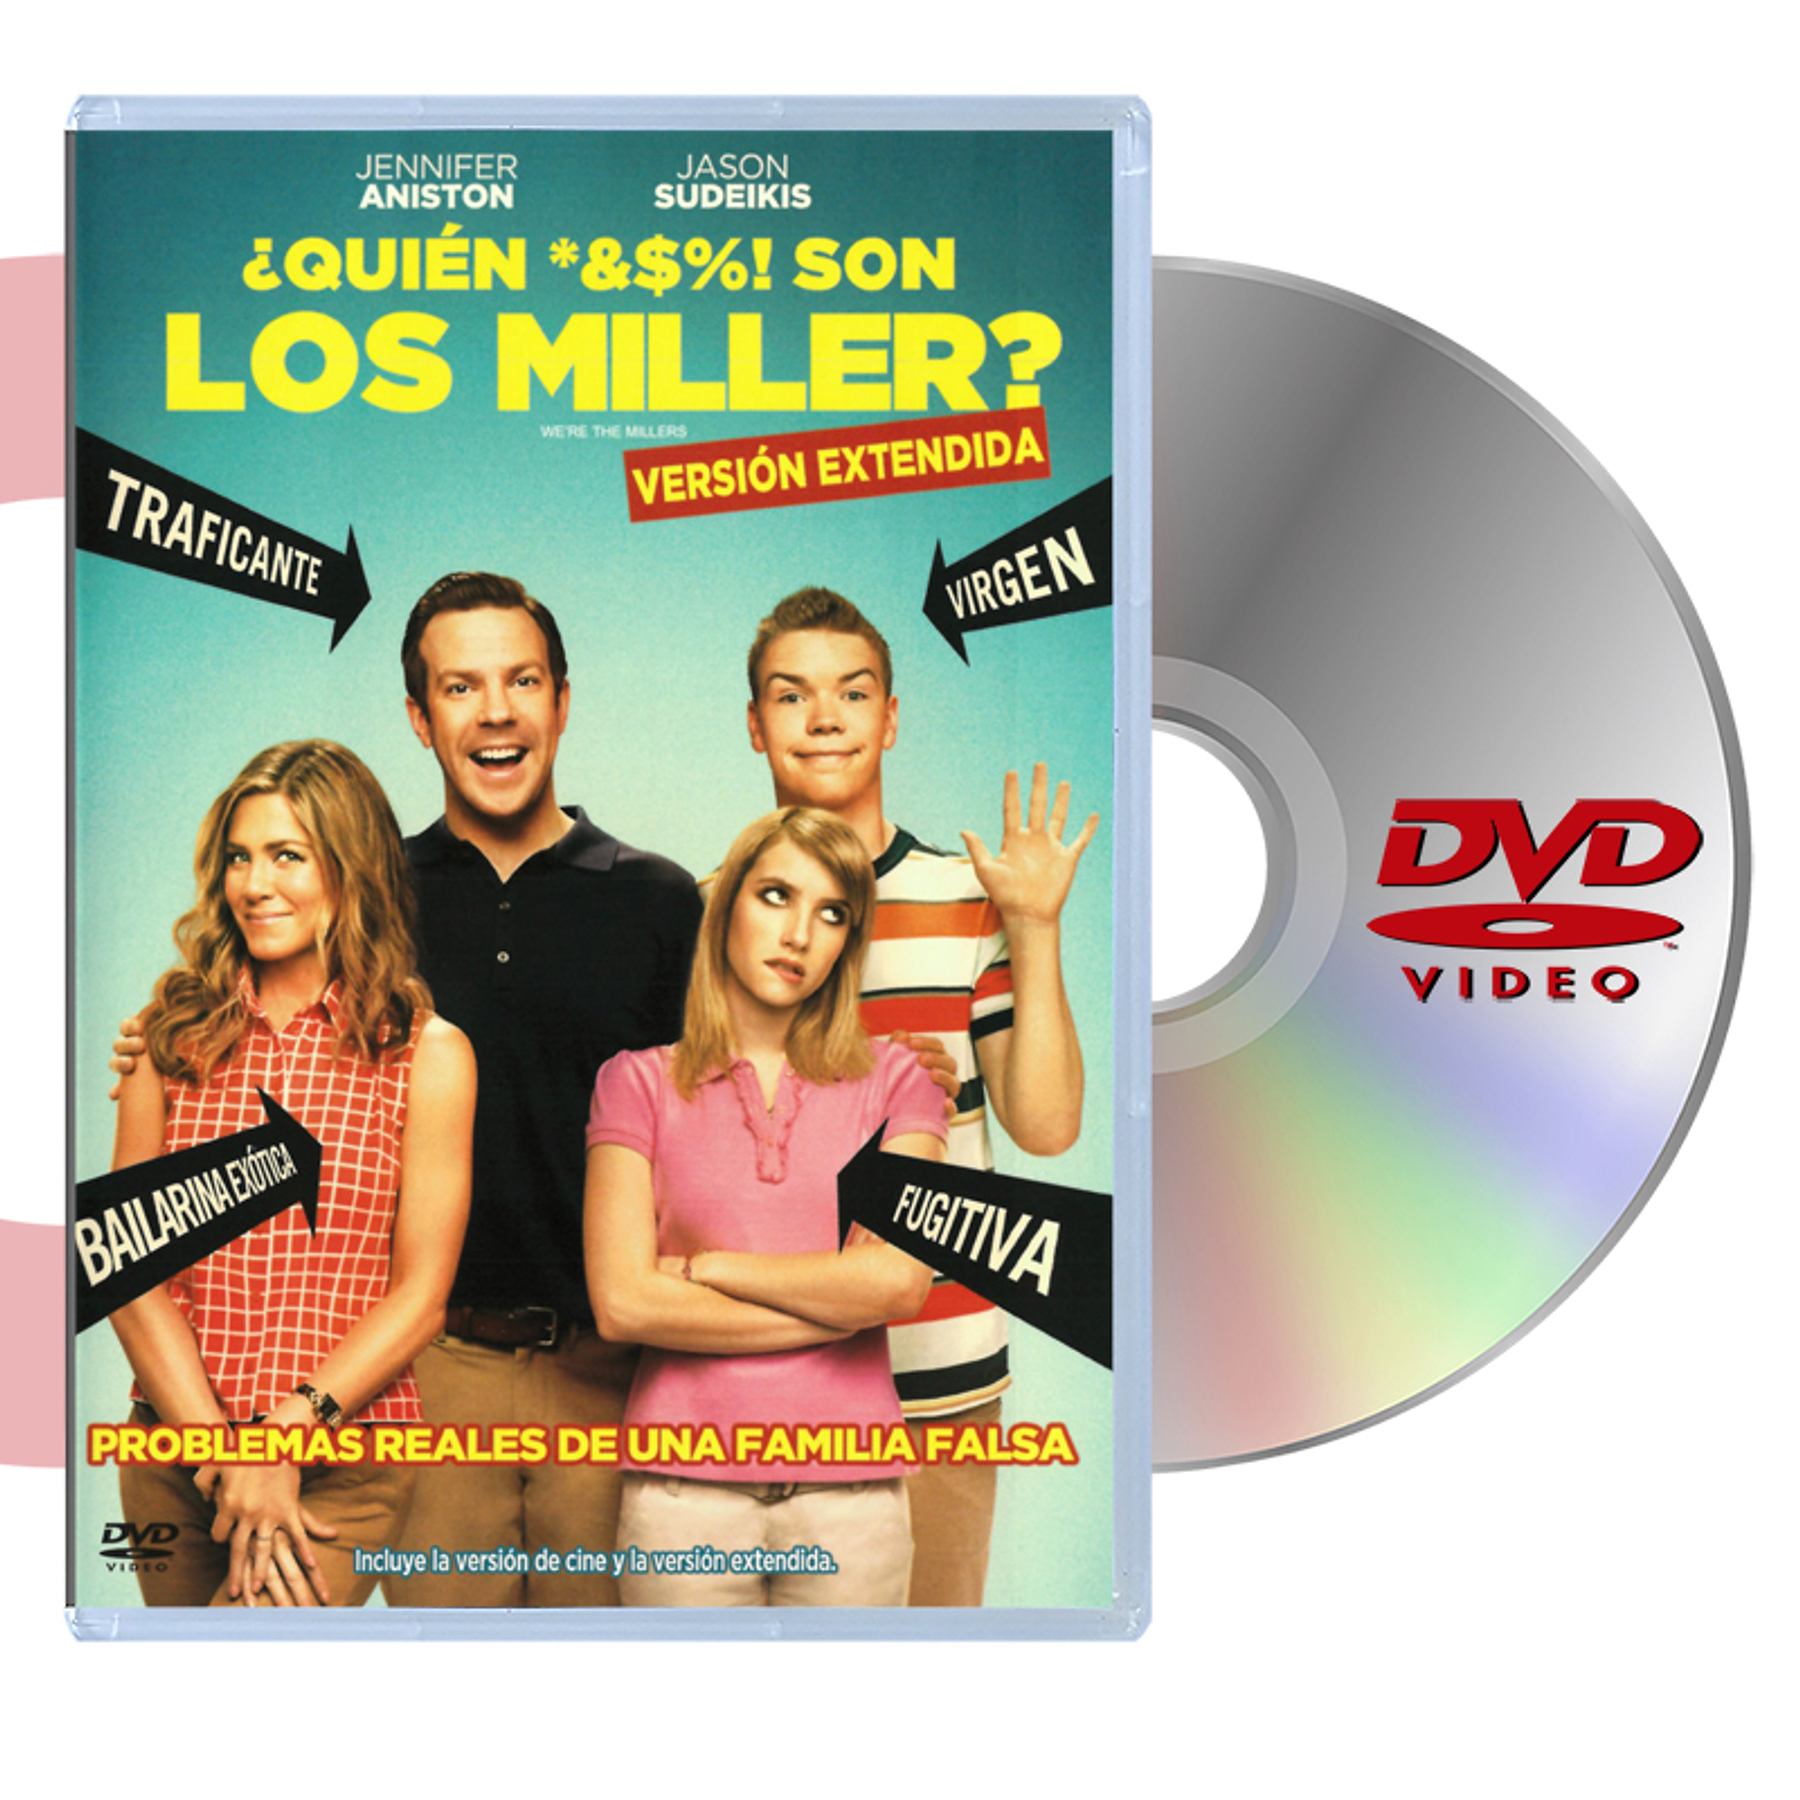 DVD ¿QUIÉN *&$%! SON LOS MILLER?